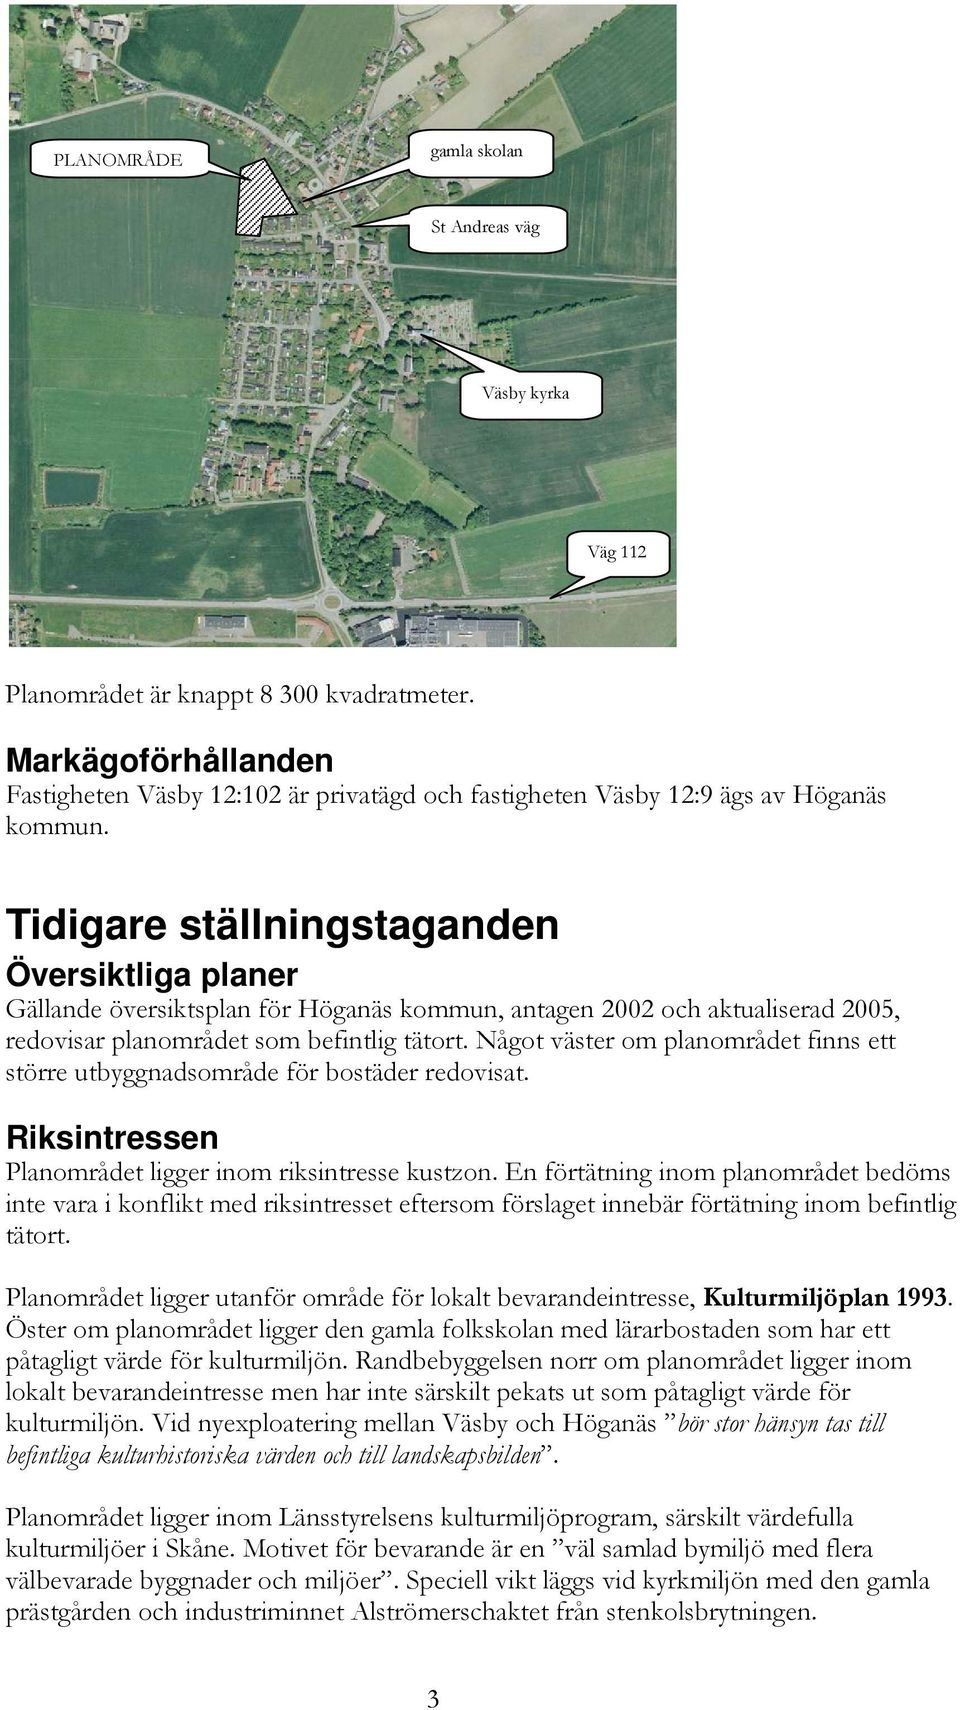 Tidigare ställningstaganden Översiktliga planer Gällande översiktsplan för Höganäs kommun, antagen 2002 och aktualiserad 2005, redovisar planområdet som befintlig tätort.